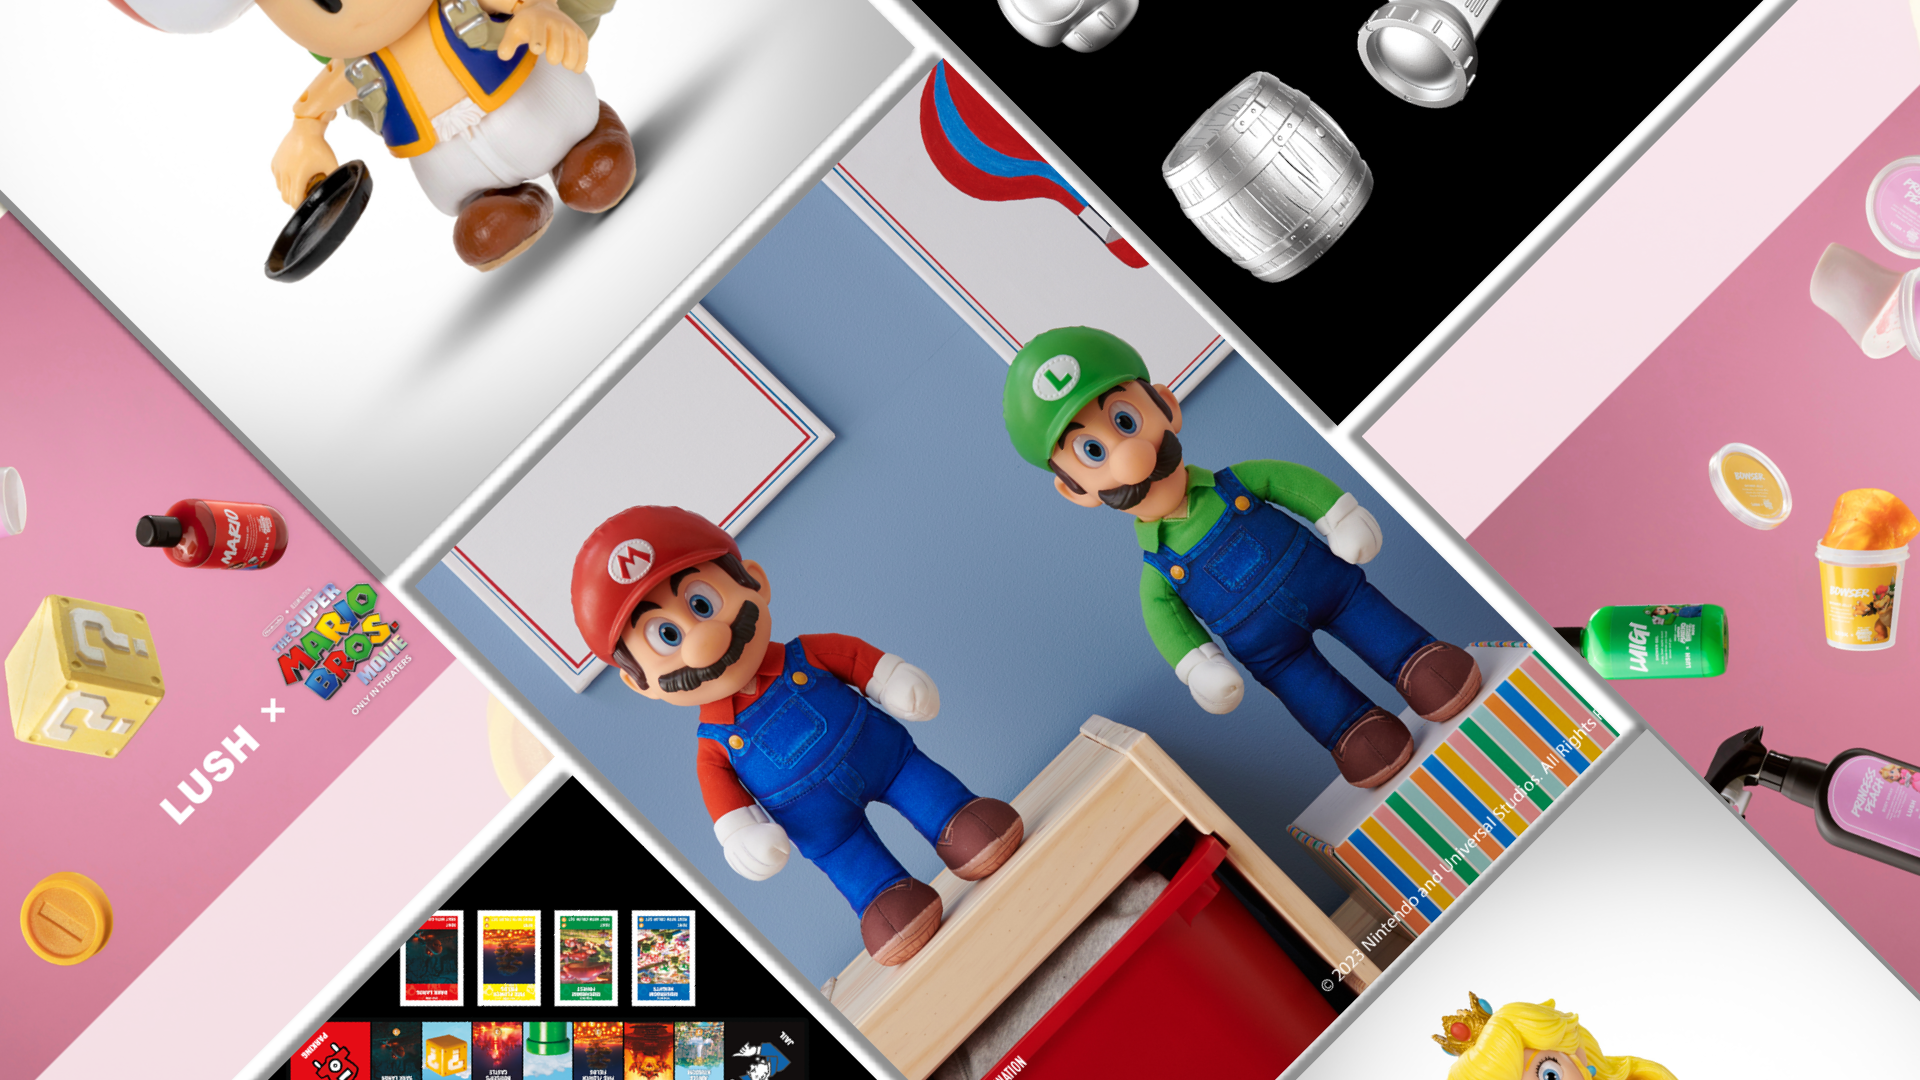 Monopoly Super Mario Bros. Movie Edition - Nintendo Official Site